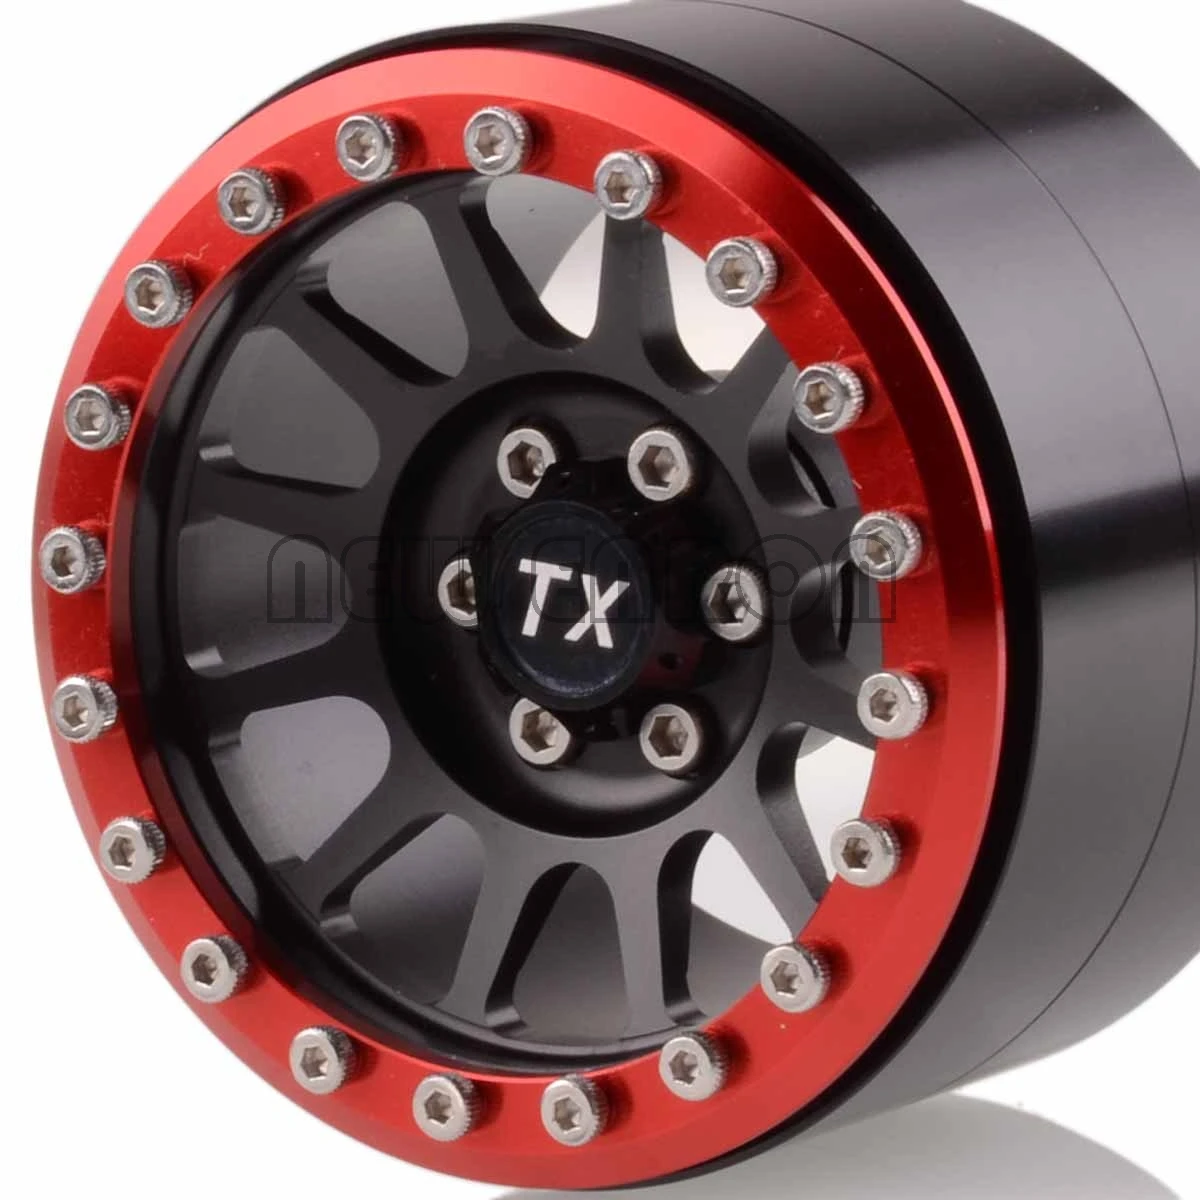 ENRON 4P 2," металл 12 спиц Beadlock колеса диски ступицы для осевой SCX10 SCX10 II 90046 90047 RR10 Wraith YETI 90056 90053